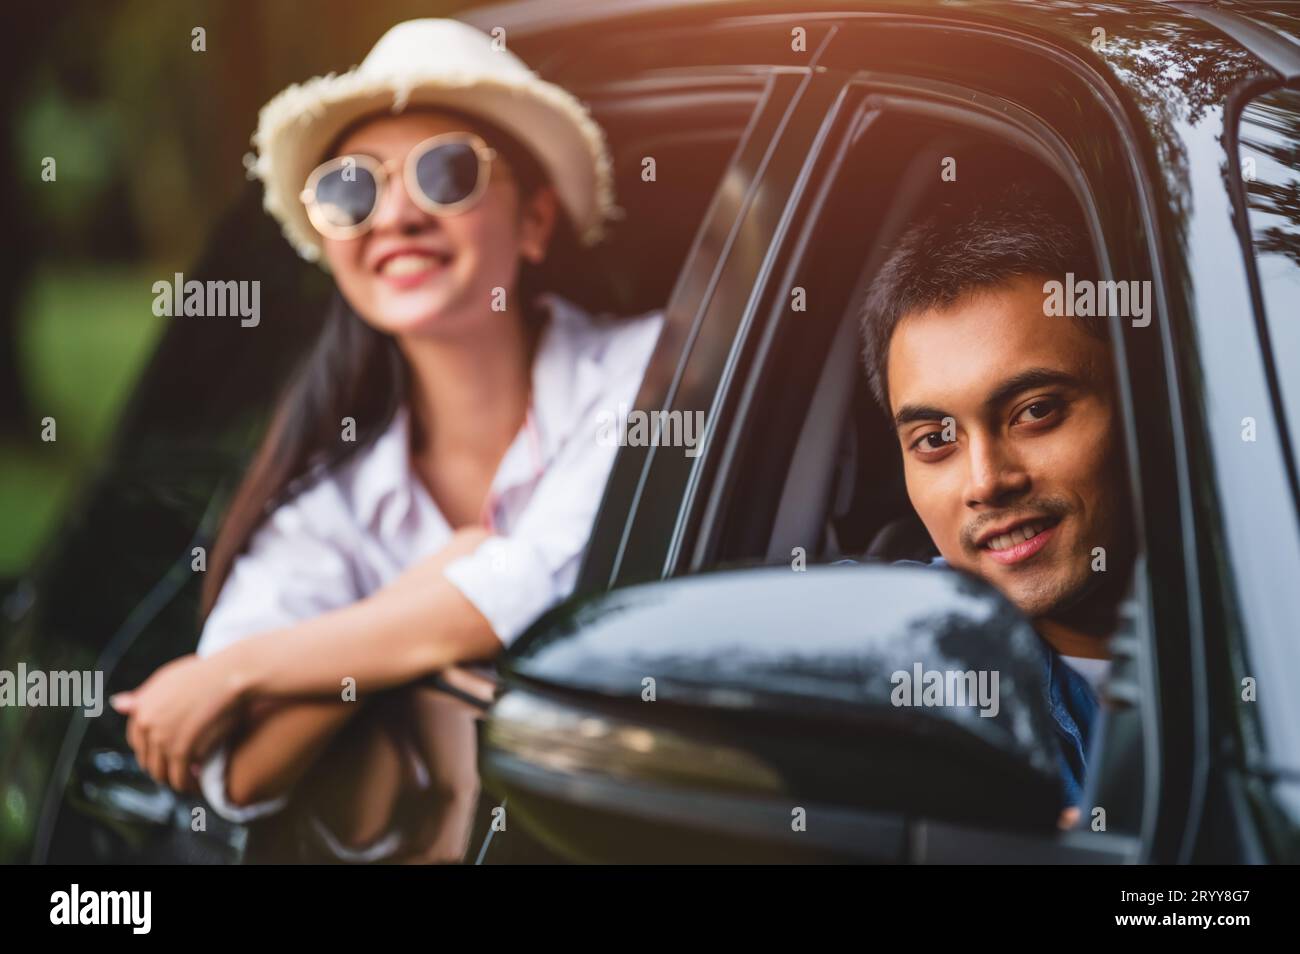 Homme asiatique heureux regardant à l'extérieur voiture à fenêtre ouverte avec sa petite amie sur fond de forêt. Le style de vie des gens se détendent en tant que voyageur Banque D'Images